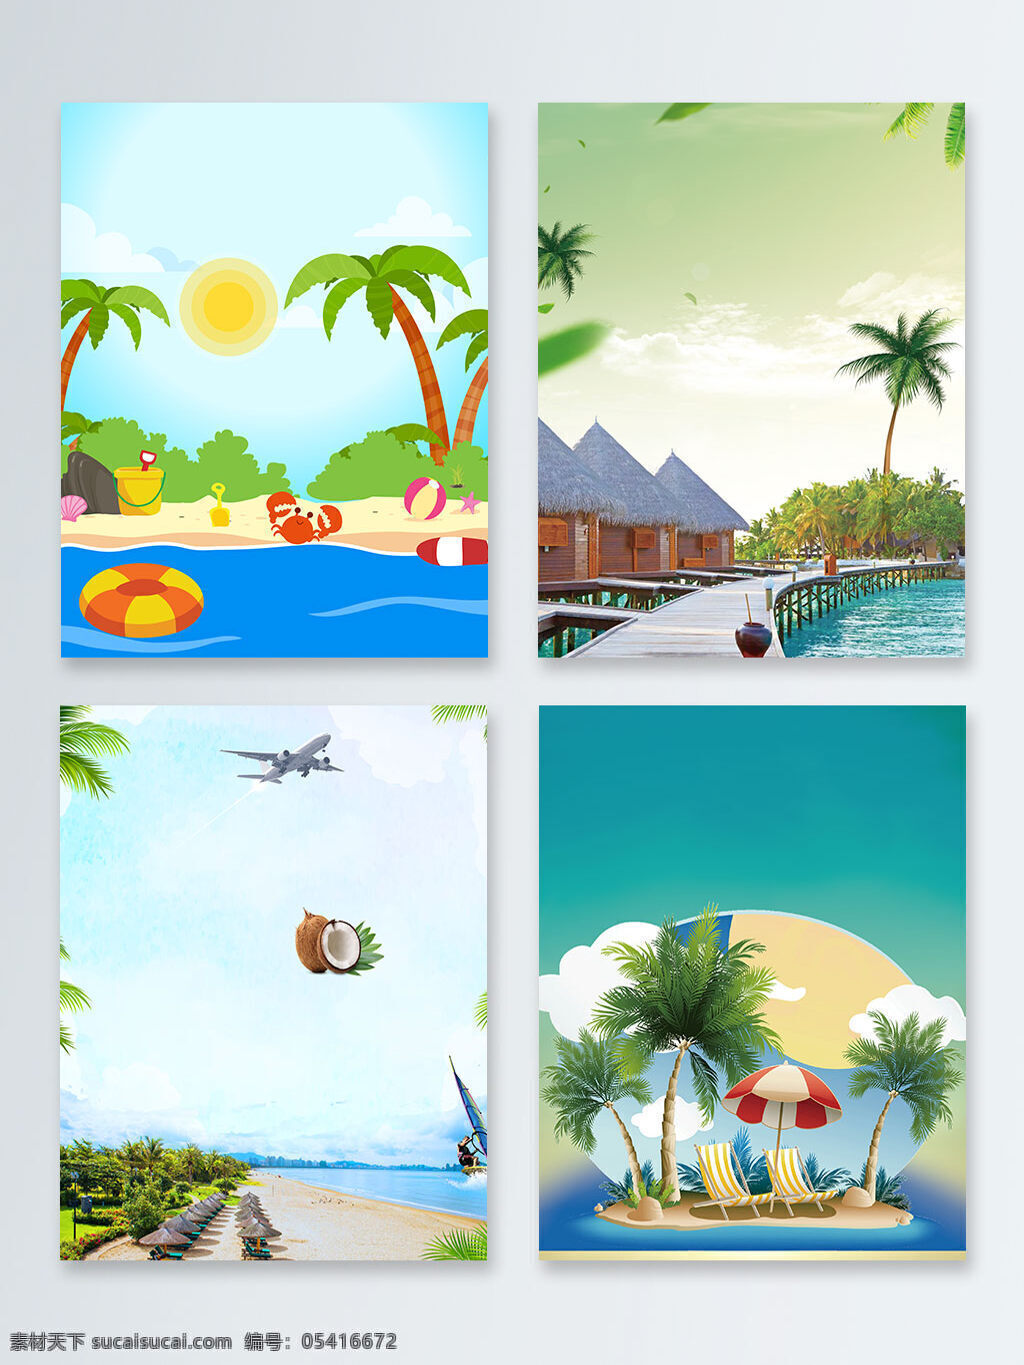 椰子树 海边 旅游 避暑 卡通 广告 背景 沙滩 海滩 云朵 泳池 椰子 海边旅游 遮阳伞 躺椅 蓝天广告背景